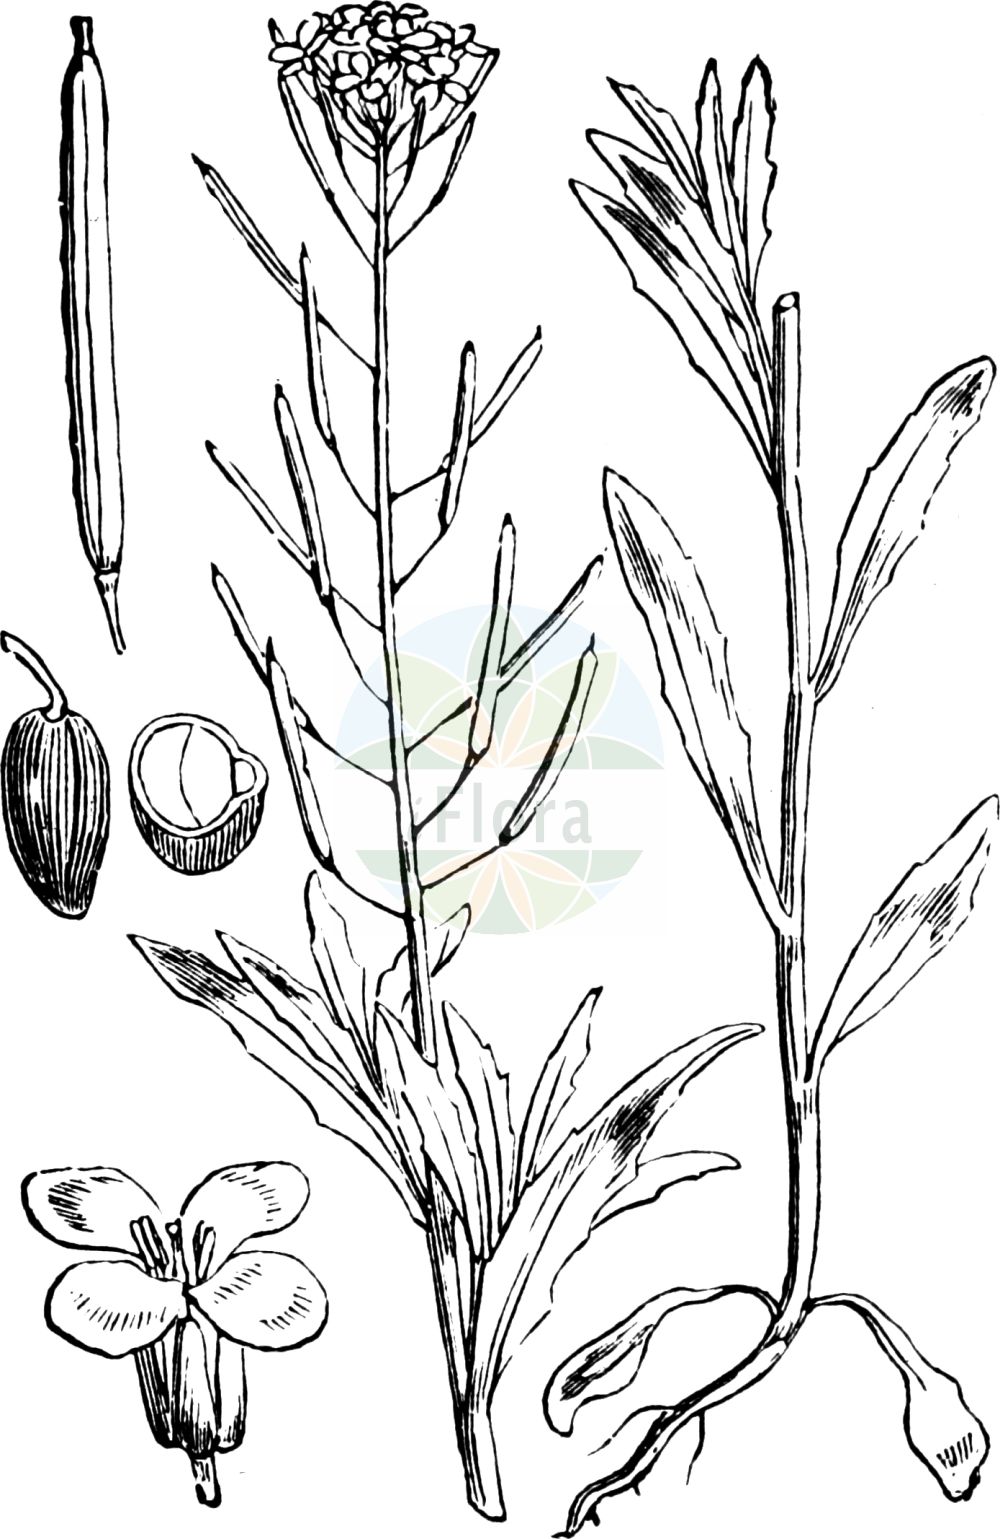 Historische Abbildung von Erysimum cheiranthoides (Acker-Schöterich - Treacle-mustard). Das Bild zeigt Blatt, Bluete, Frucht und Same. ---- Historical Drawing of Erysimum cheiranthoides (Acker-Schöterich - Treacle-mustard). The image is showing leaf, flower, fruit and seed.(Erysimum cheiranthoides,Acker-Schöterich,Treacle-mustard,Erysimum cheiranthoides,Acker-Schoeterich,Acker-Schotendotter,Treacle-mustard,Wormseed Wallflower,Wallflower Mustard,Wormseed Mustard,Erysimum,Schöterich,Wallflower,Brassicaceae,Kreuzblütler,Cabbage family,Blatt,Bluete,Frucht,Same,leaf,flower,fruit,seed,Fitch et al. (1880))